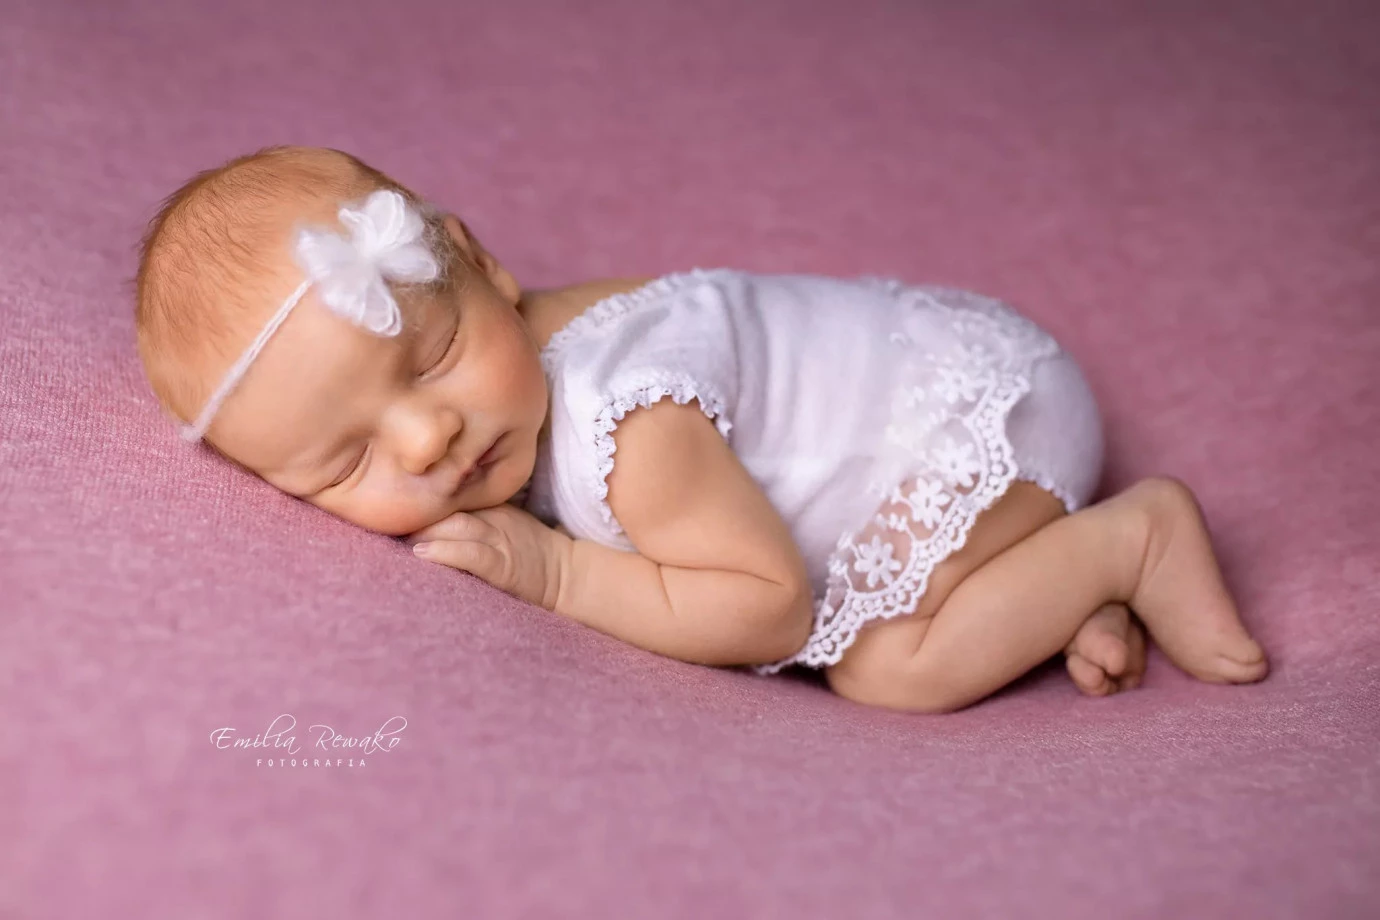 zdjęcia gdynia fotograf emilia-rewako-fotografia portfolio zdjecia noworodkow sesje noworodkowe niemowlę